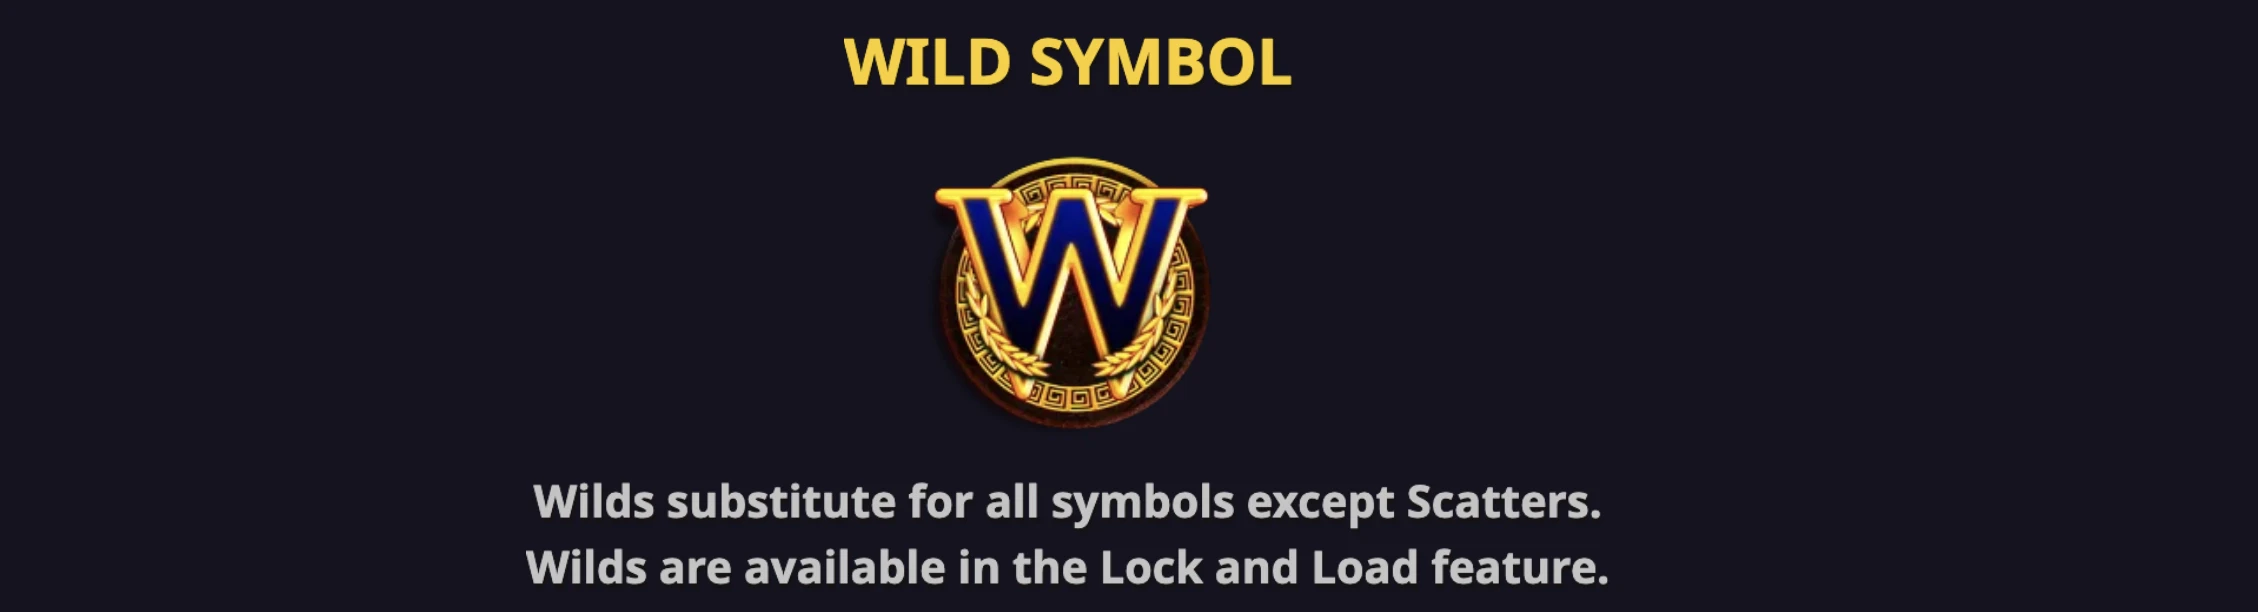 Le symbole wild permet de connecter avec tous les autres symboles de la machine à sous